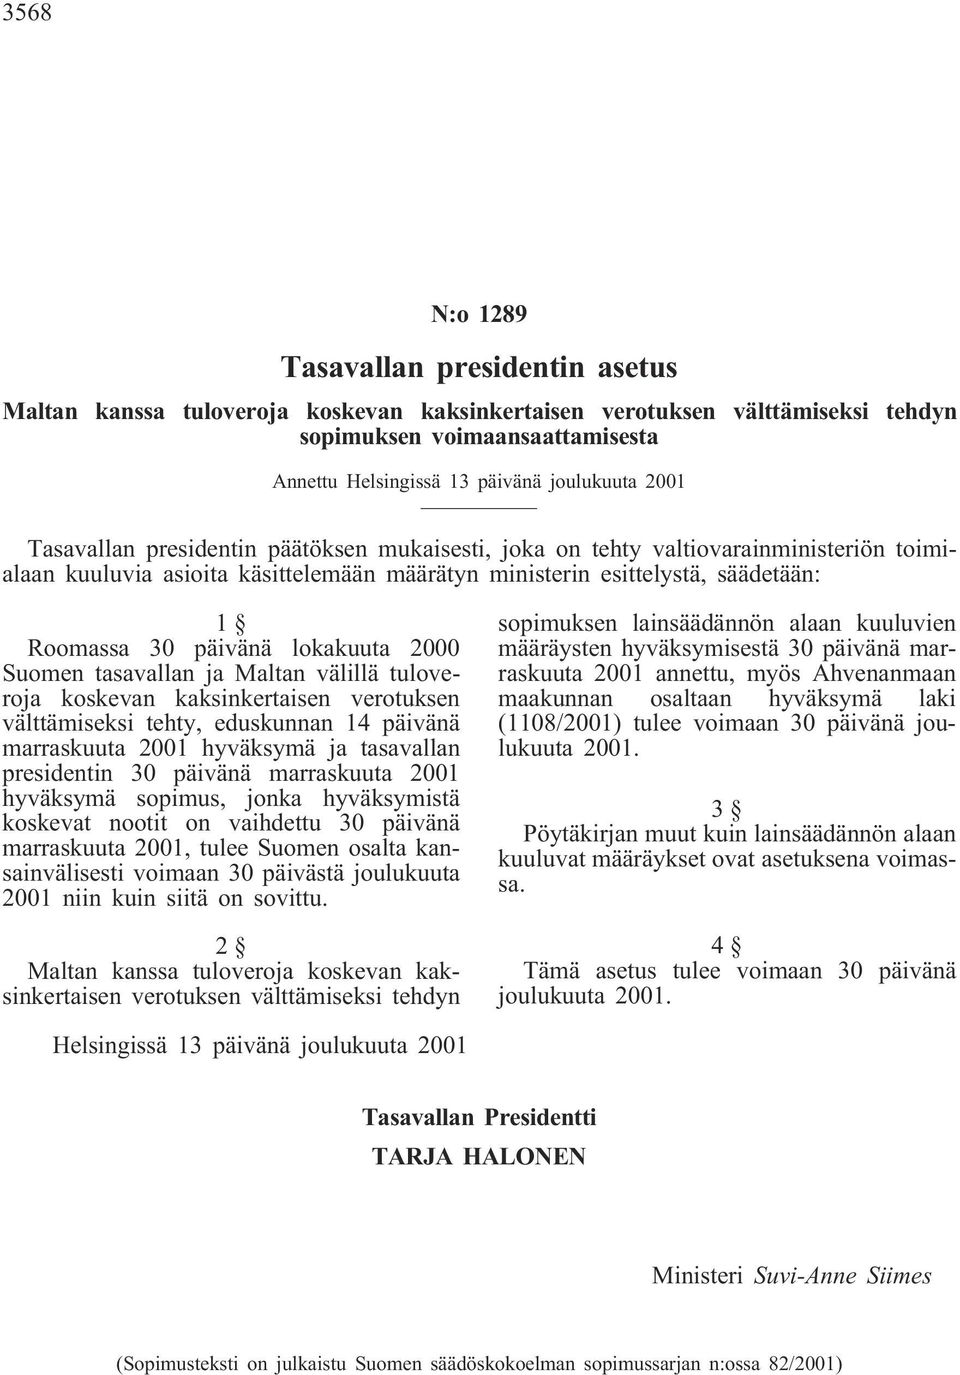 Maltan välillä tuloveroja koskevan kaksinkertaisen verotuksen välttämiseksi tehty, eduskunnan 14 päivänä marraskuuta 2001 hyväksymä ja tasavallan presidentin 30 päivänä marraskuuta 2001 hyväksymä